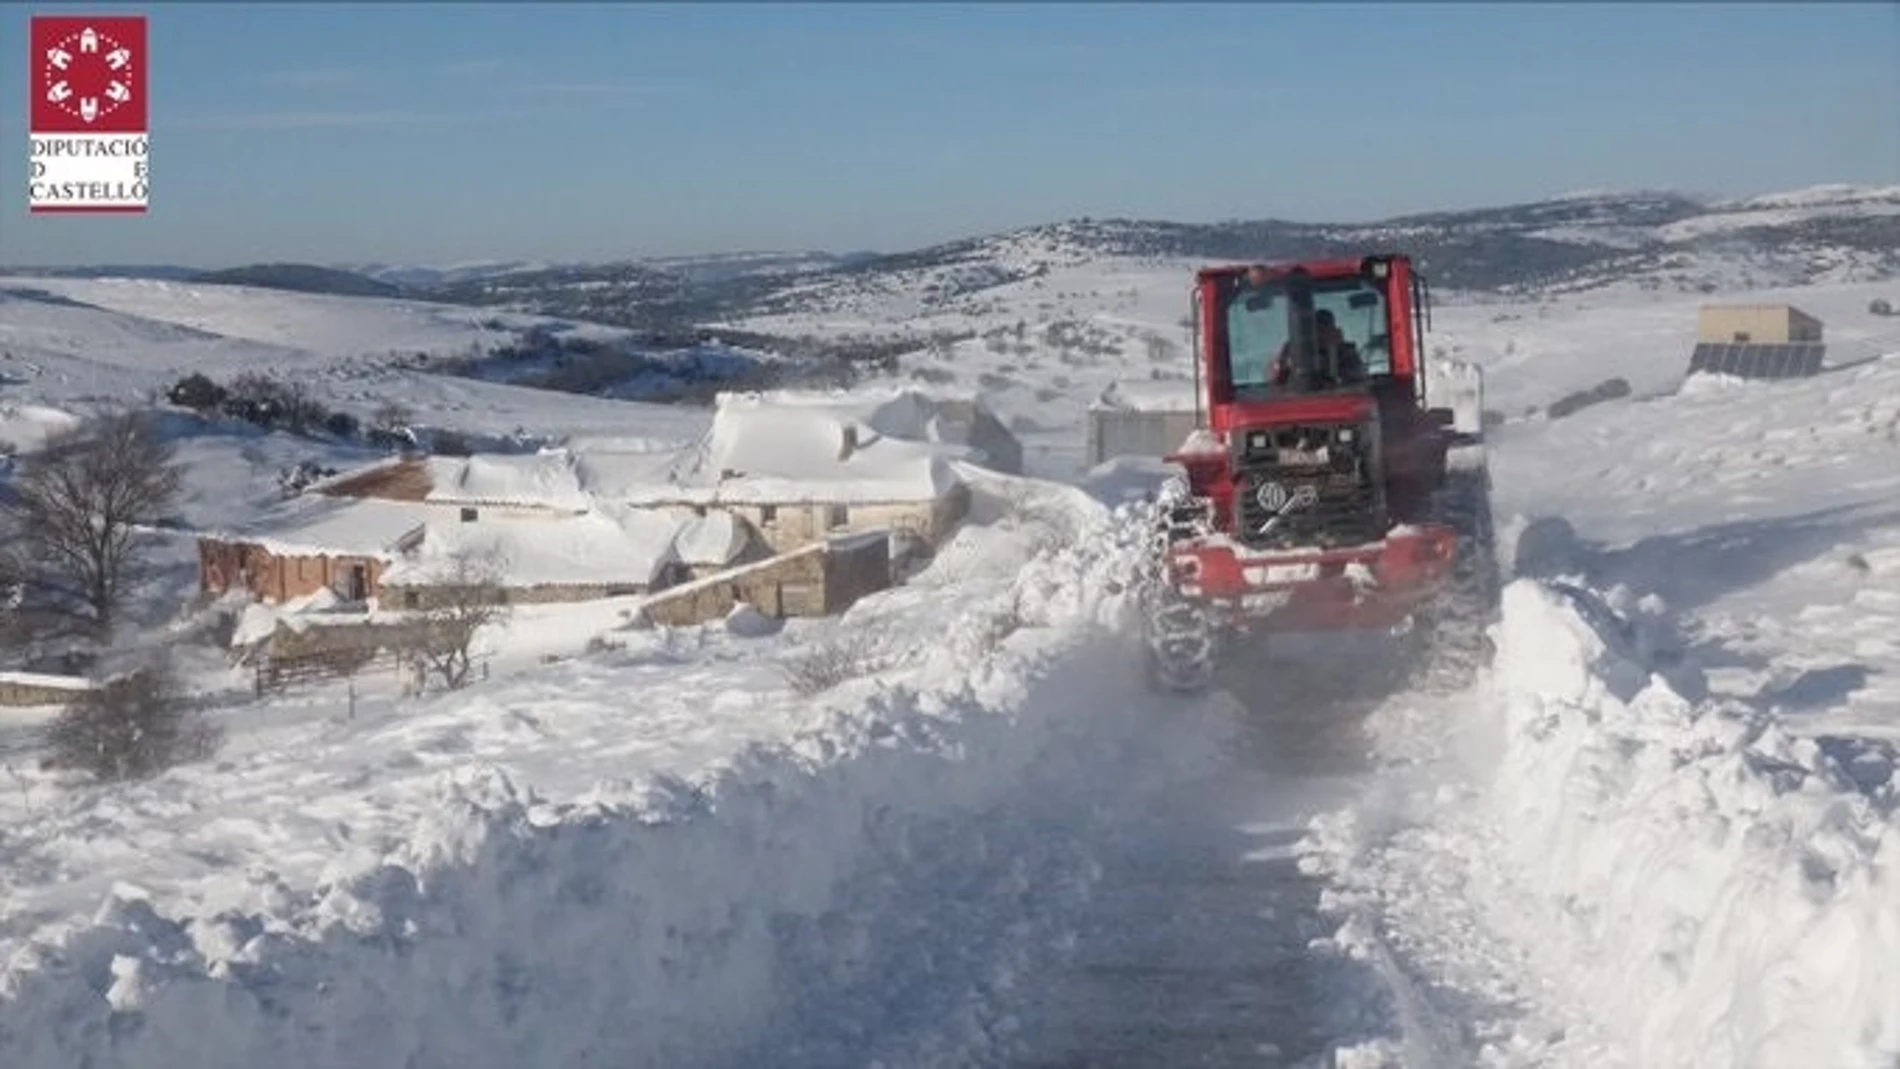 El Consorcio de Bomberos de Castellón refuerza con más maquinaria las medidas contra el hielo en carreteras en la nevada de enero de 2021